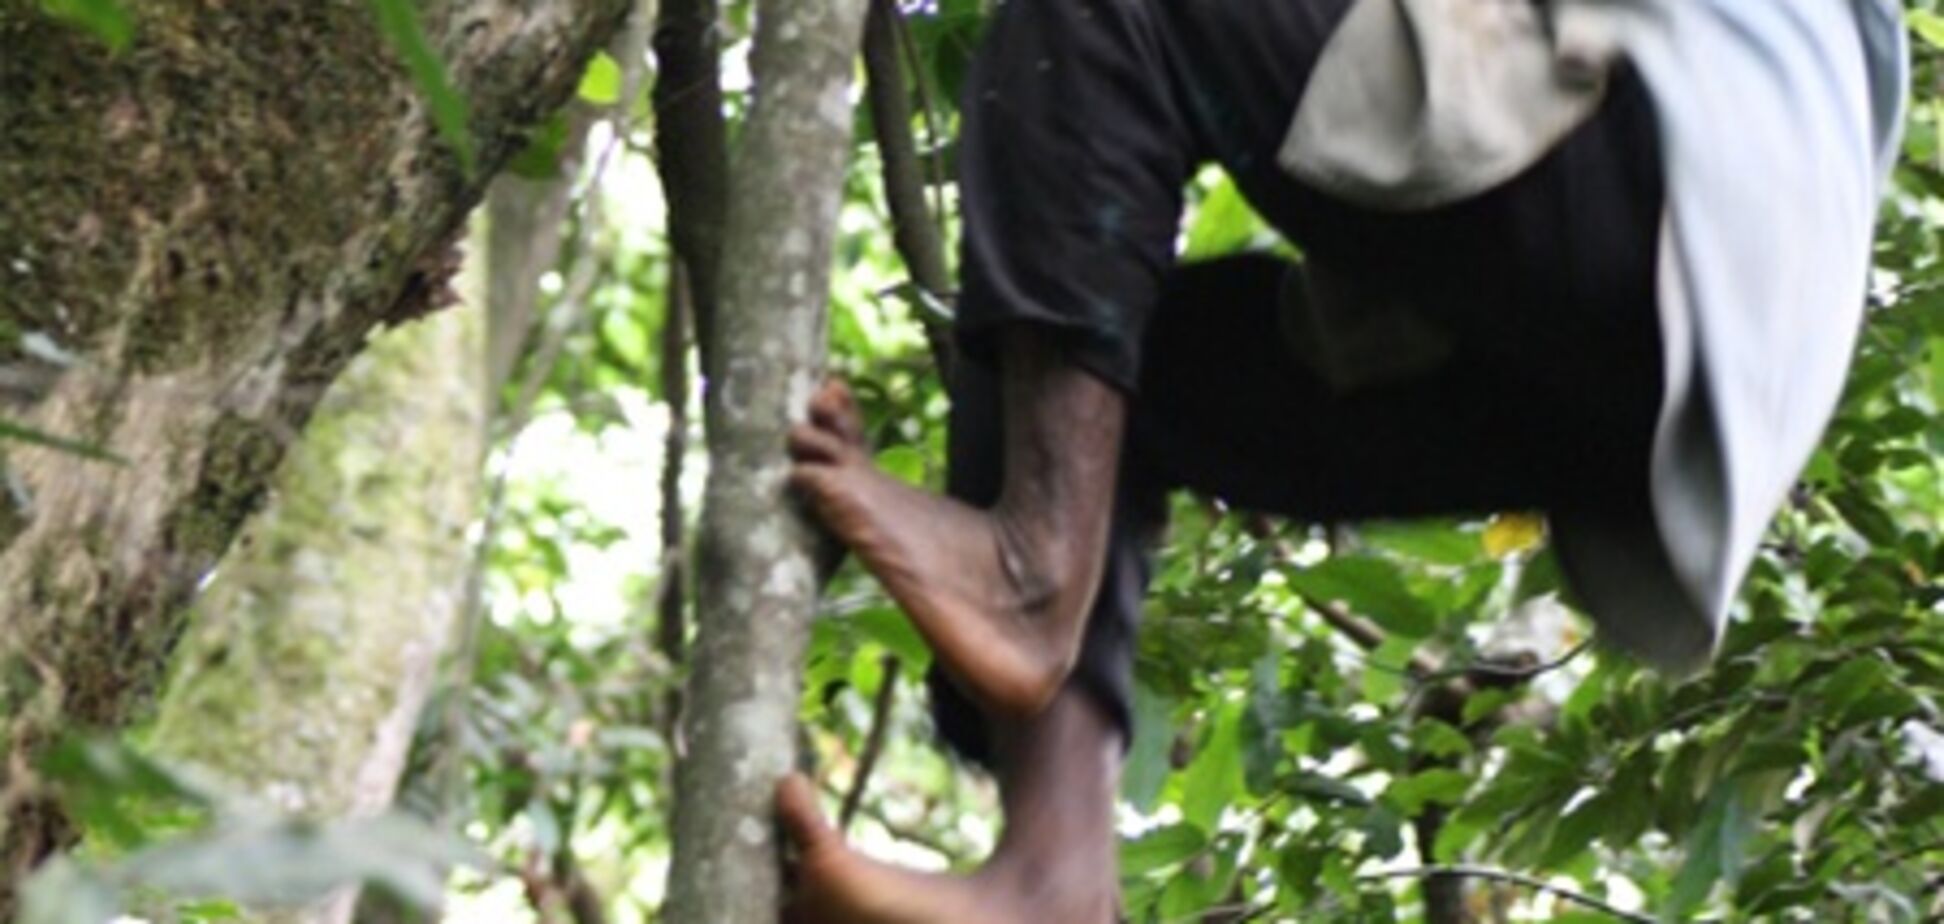 В Африке нашли племя с 'обезьяньими' ногами. Видео